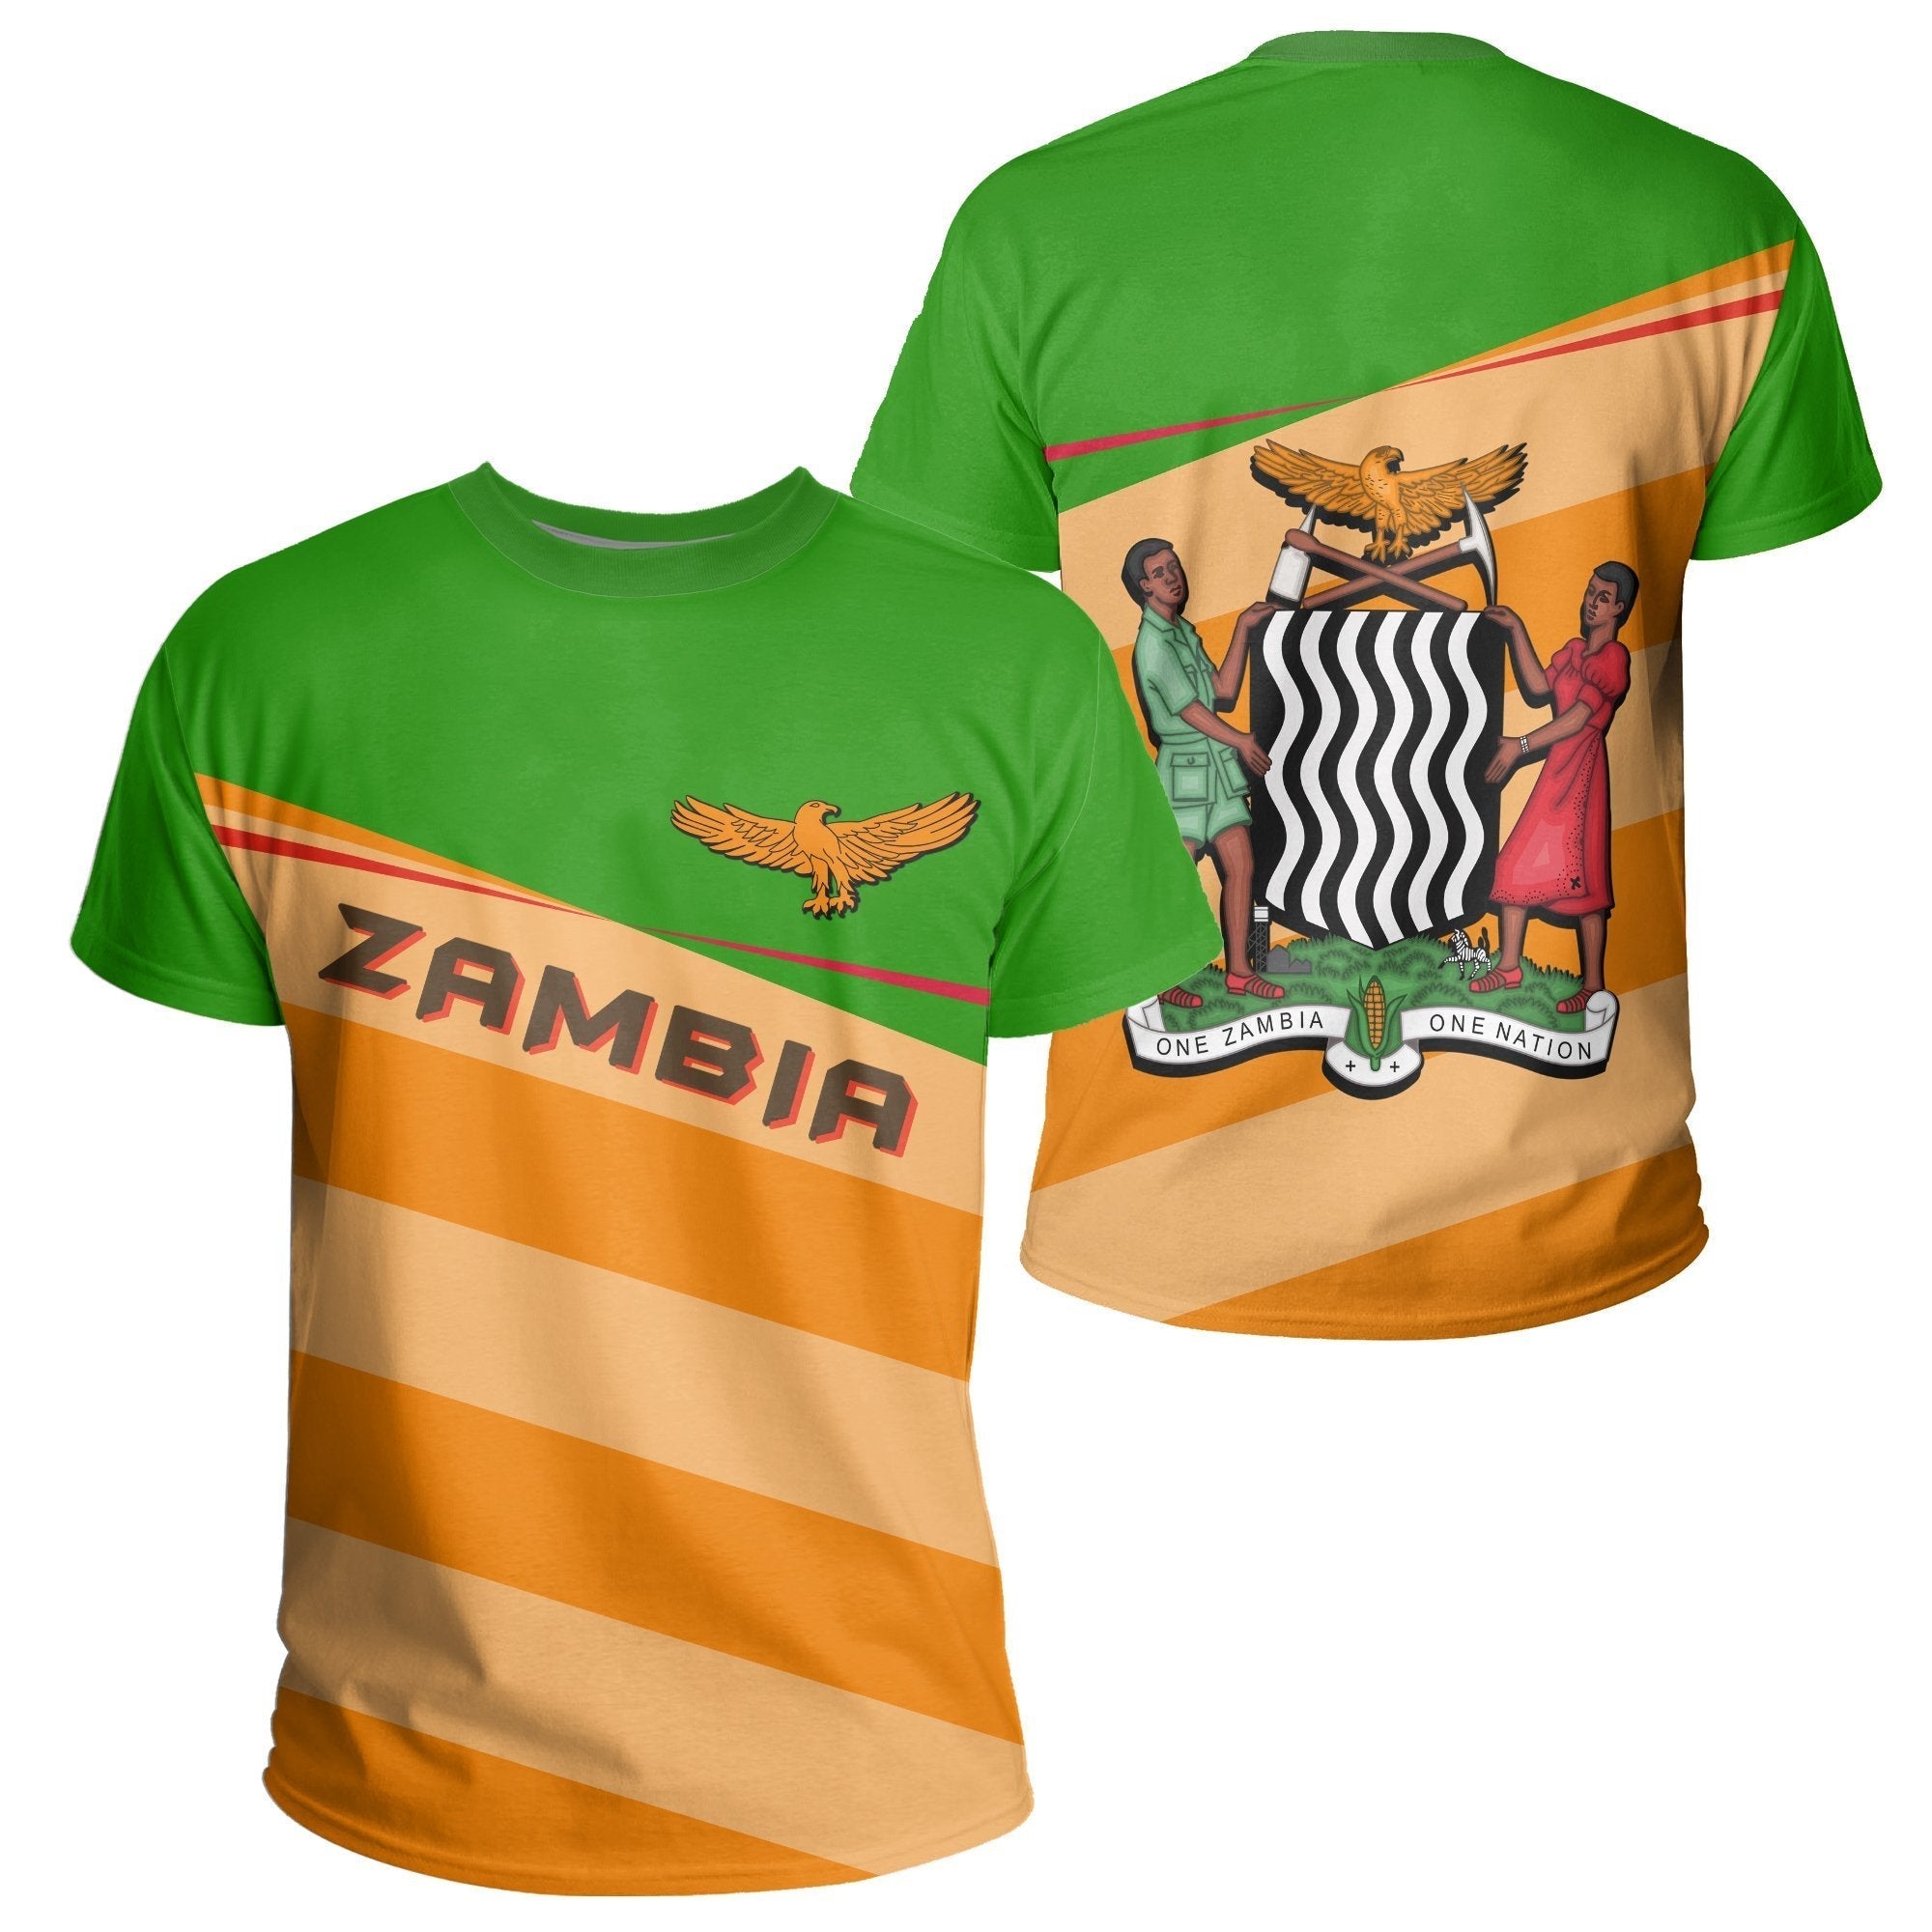 wonder-print-shop-t-shirt-zambia-vivian-style-tee